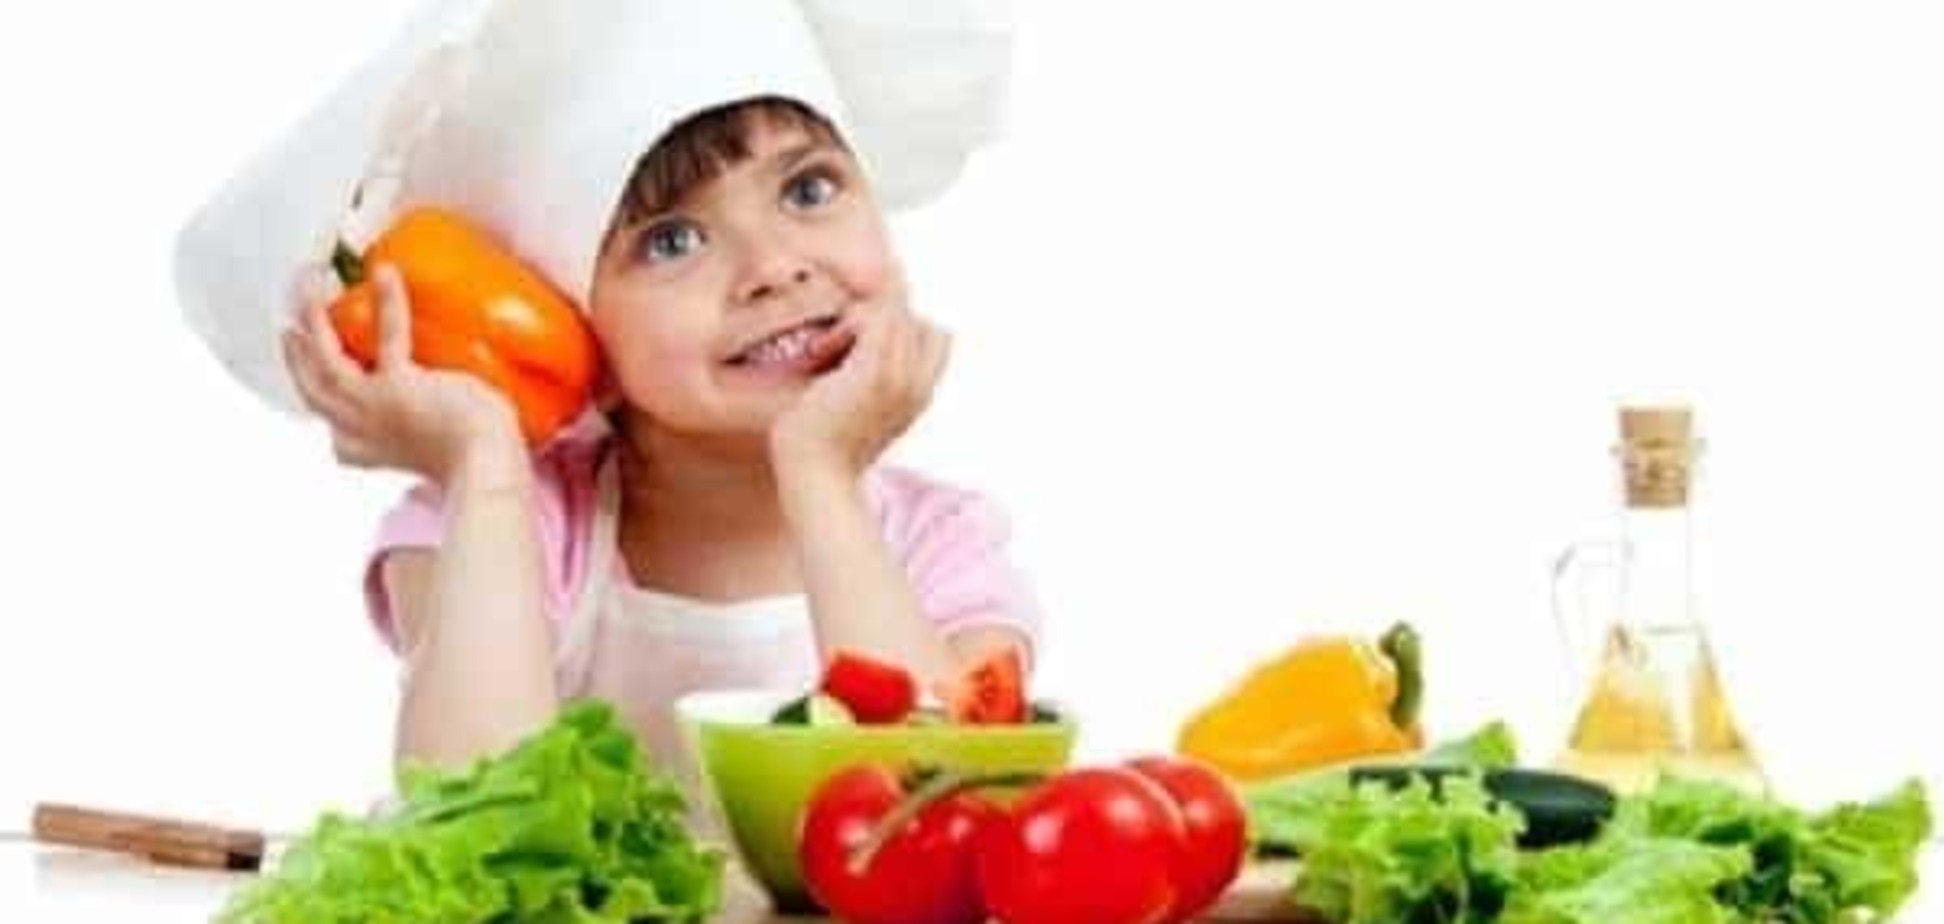 Приучить ребенка к правильному питанию можно с помощью игры